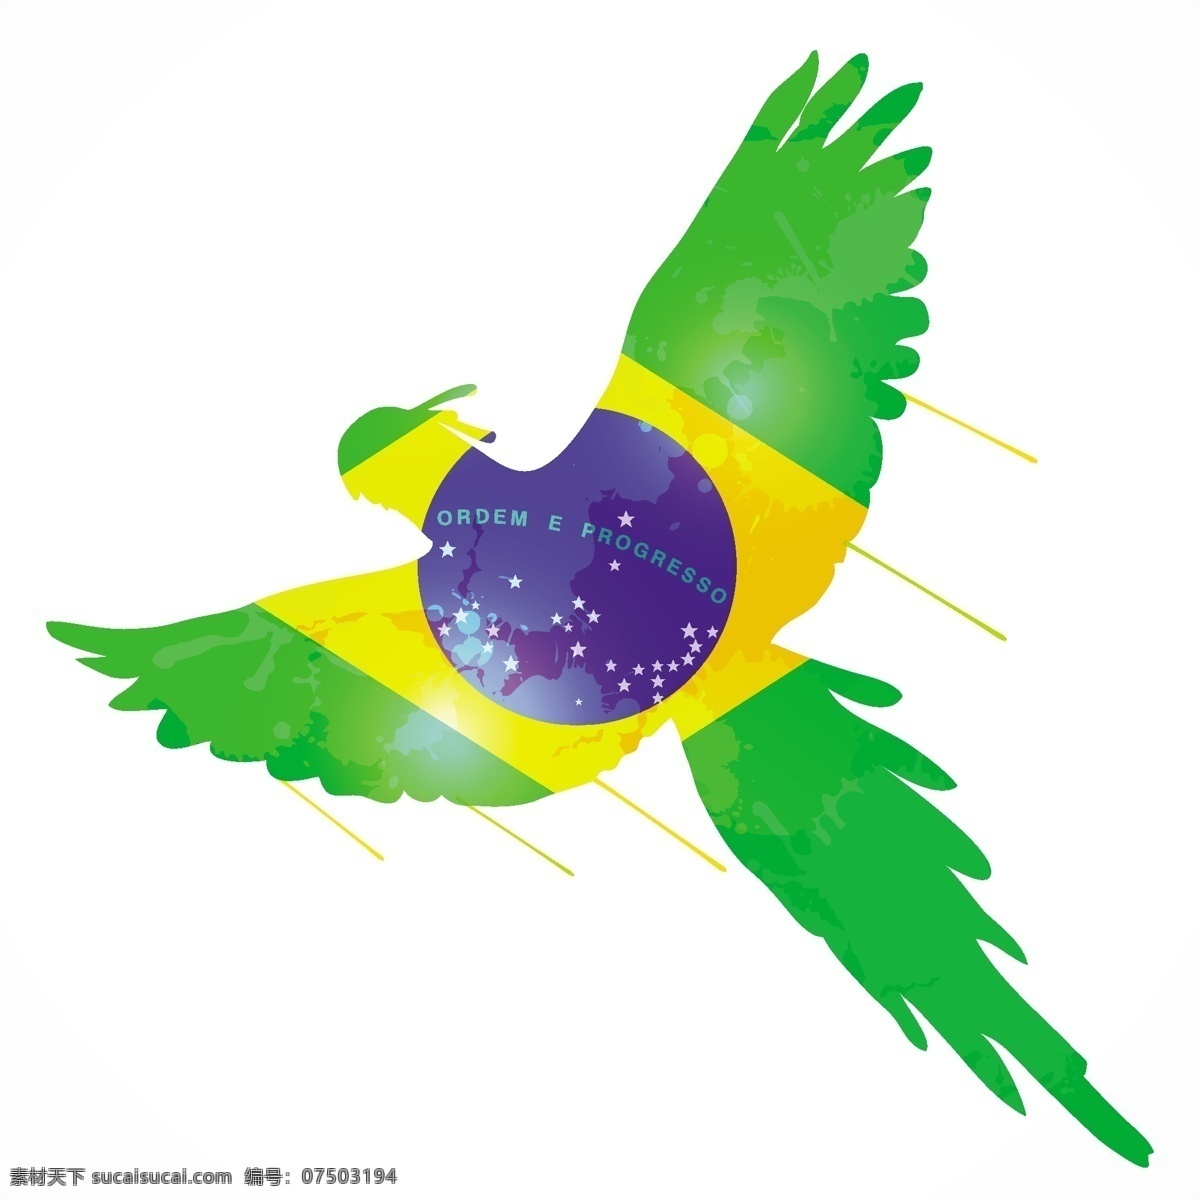 鹦鹉 巴西 国旗 模板下载 巴西国旗 足球 世界杯 足球赛事 体育运动 生活百科 矢量素材 白色